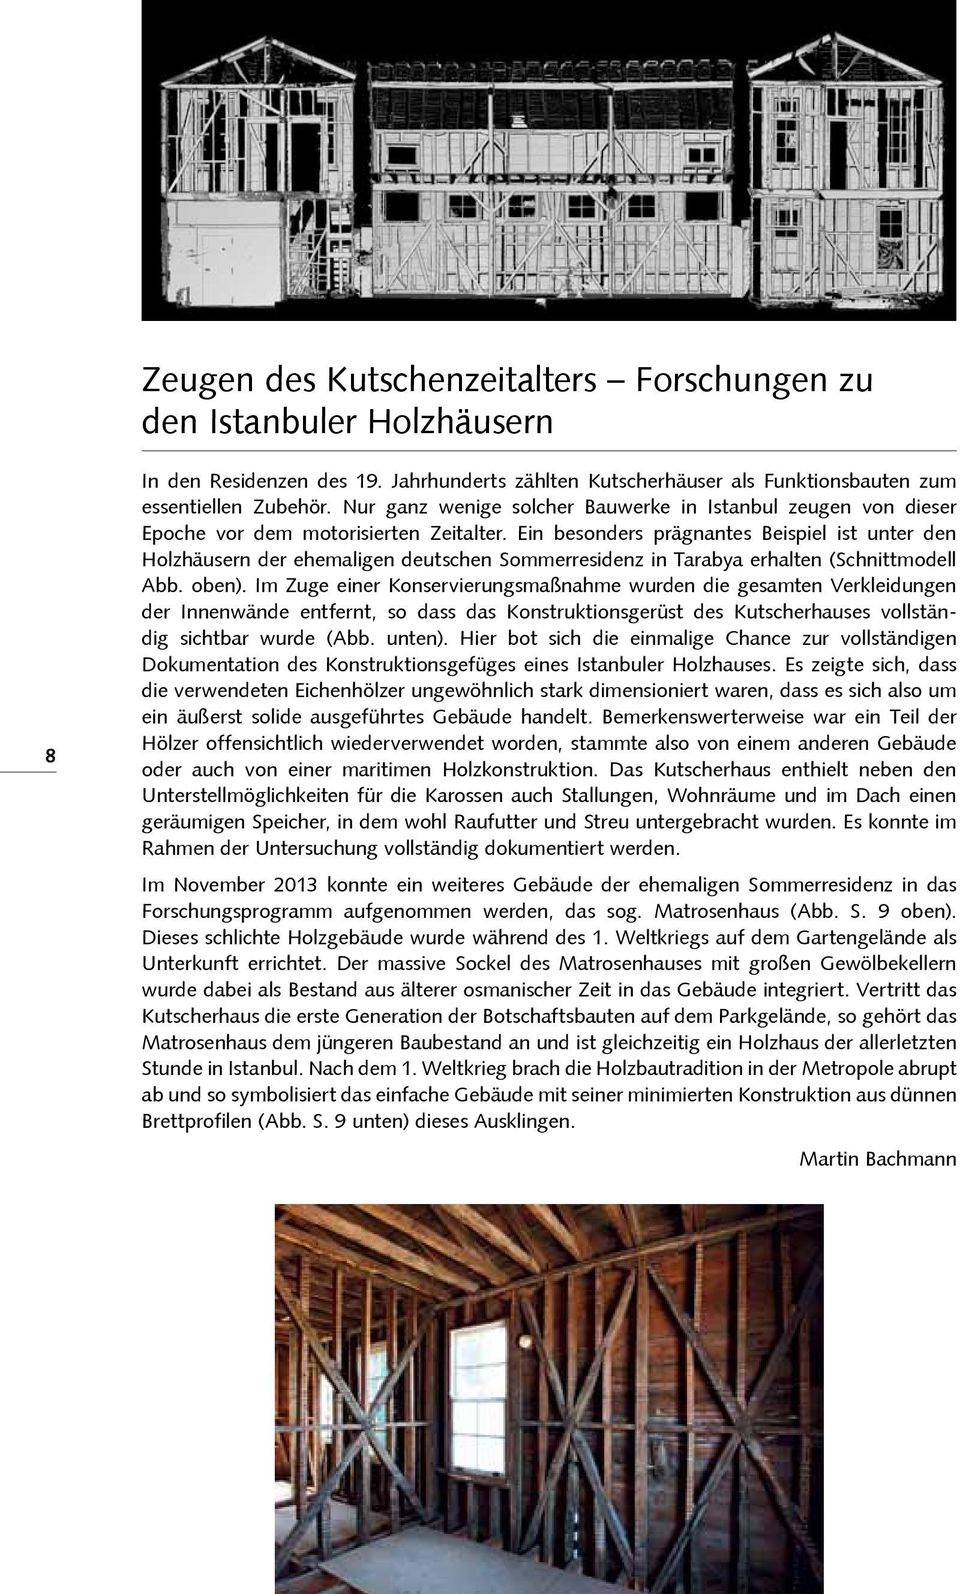 Ein besonders prägnantes Beispiel ist unter den Holzhäusern der ehemaligen deutschen Sommerresidenz in Tarabya erhalten (Schnittmodell Abb. oben).